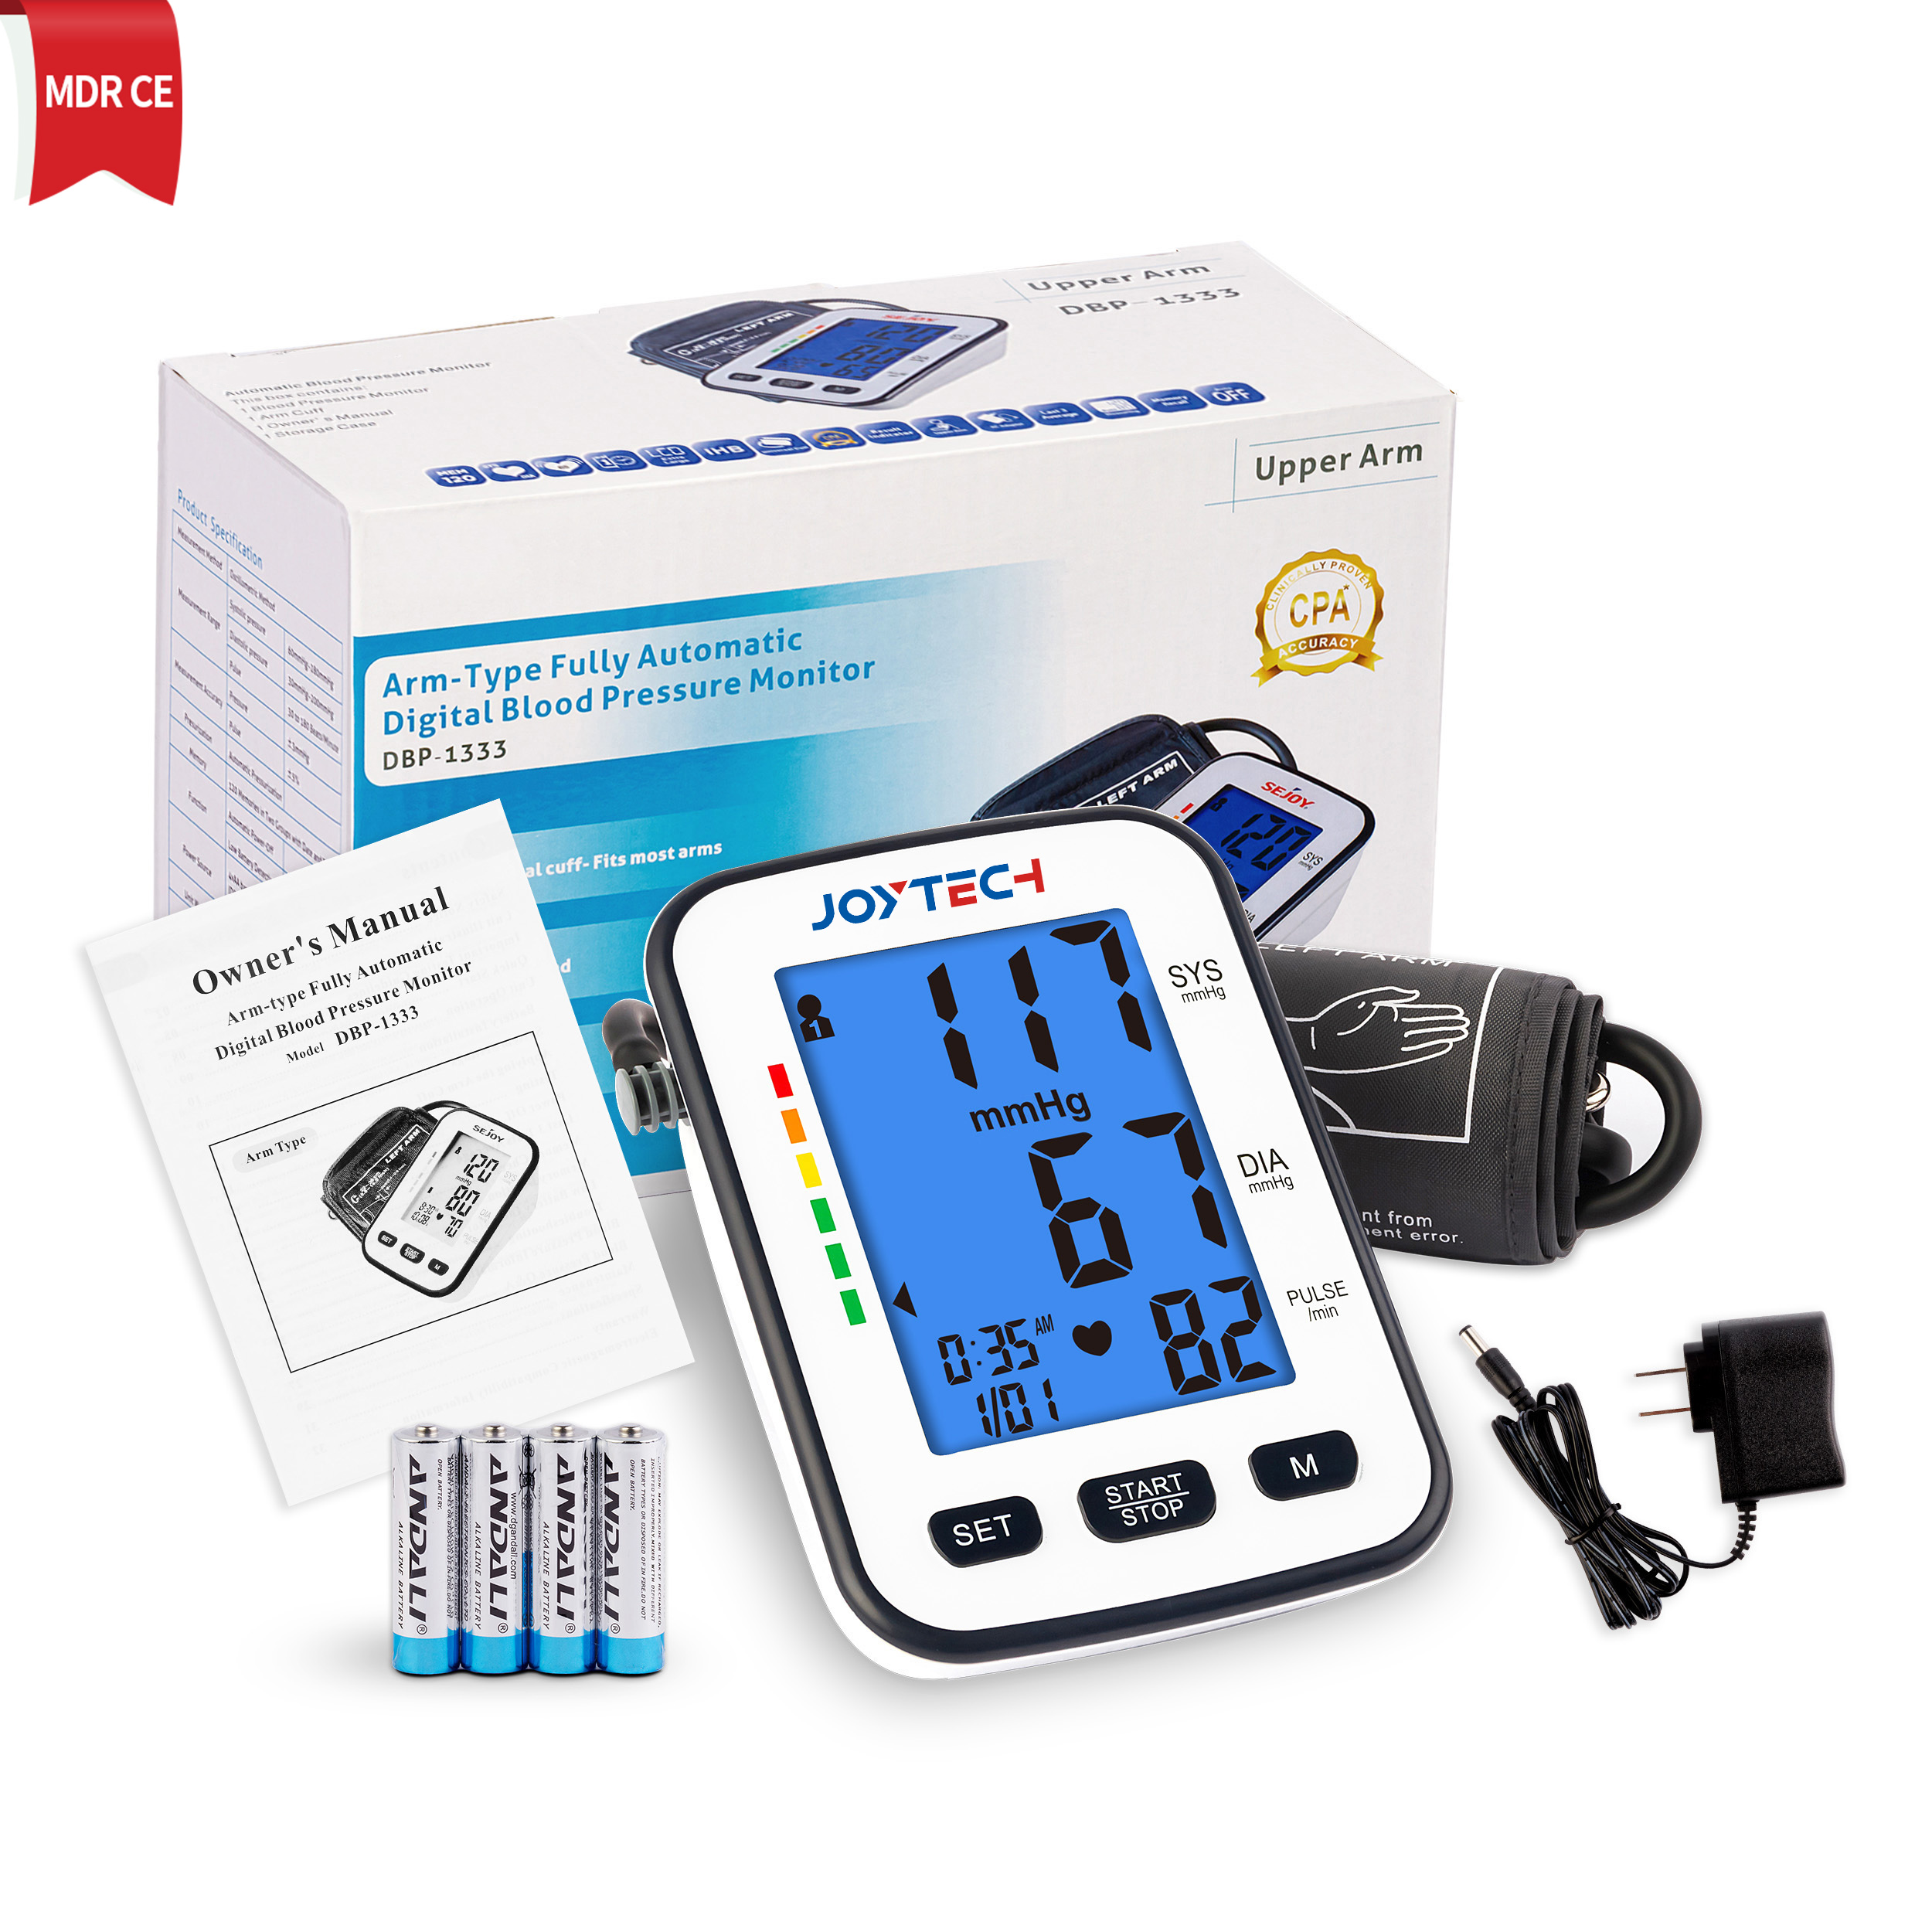 Monitor de pressió arterial Bluetooth amb monitor LCD gran i Smart Cuff BP